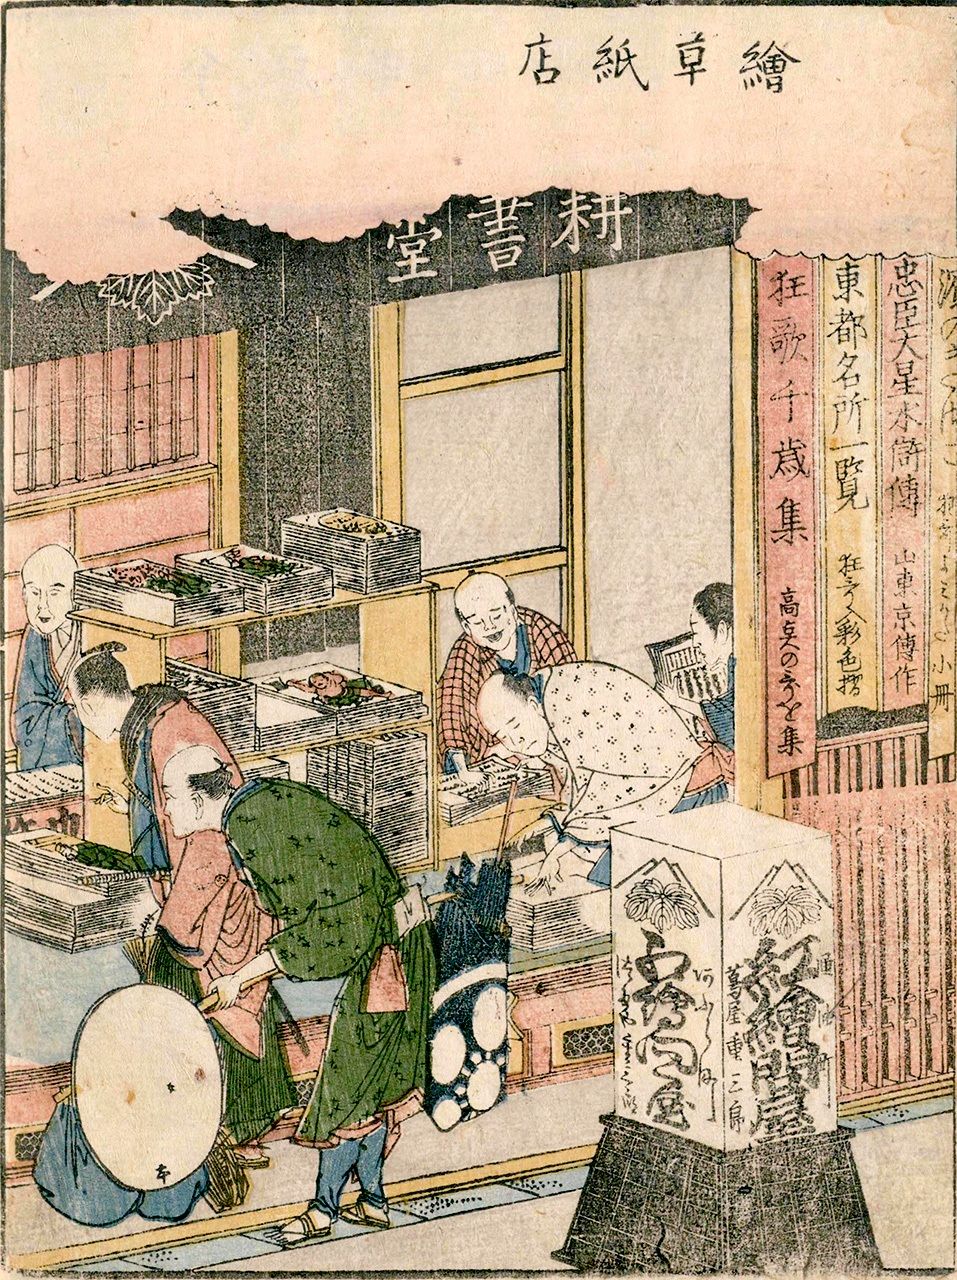 تم تضمين كوشودو في ”كتاب مصور للترفيه في إيدو“ للفنان كاتسوشيكا هوكوساي. نُشر العمل في عام 1802، ويُعتقد أنه يصور المتجر بعد وفاة تسوتايا (بإذن من مكتبة البرلمان القومية).